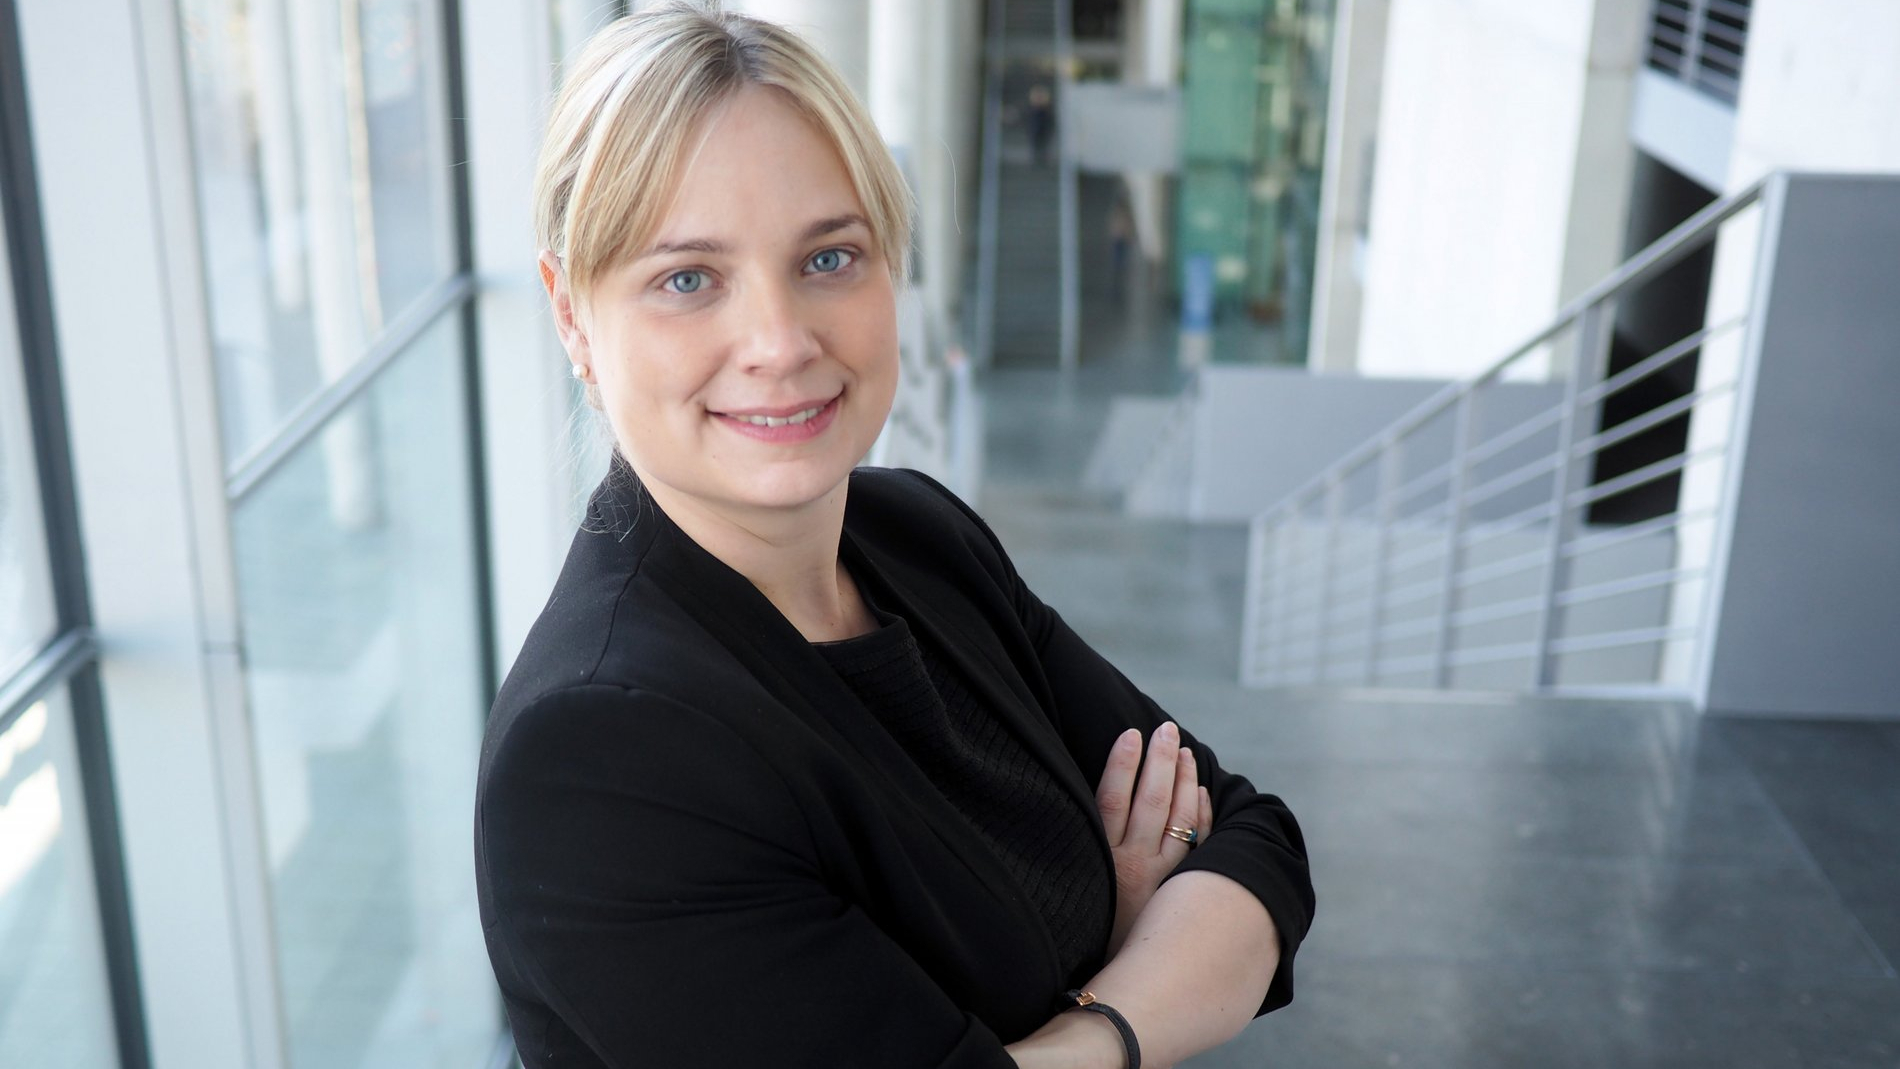 Porträt von Marja-Liisa Völlers mit verschränkten Armen und leicht lächelnd